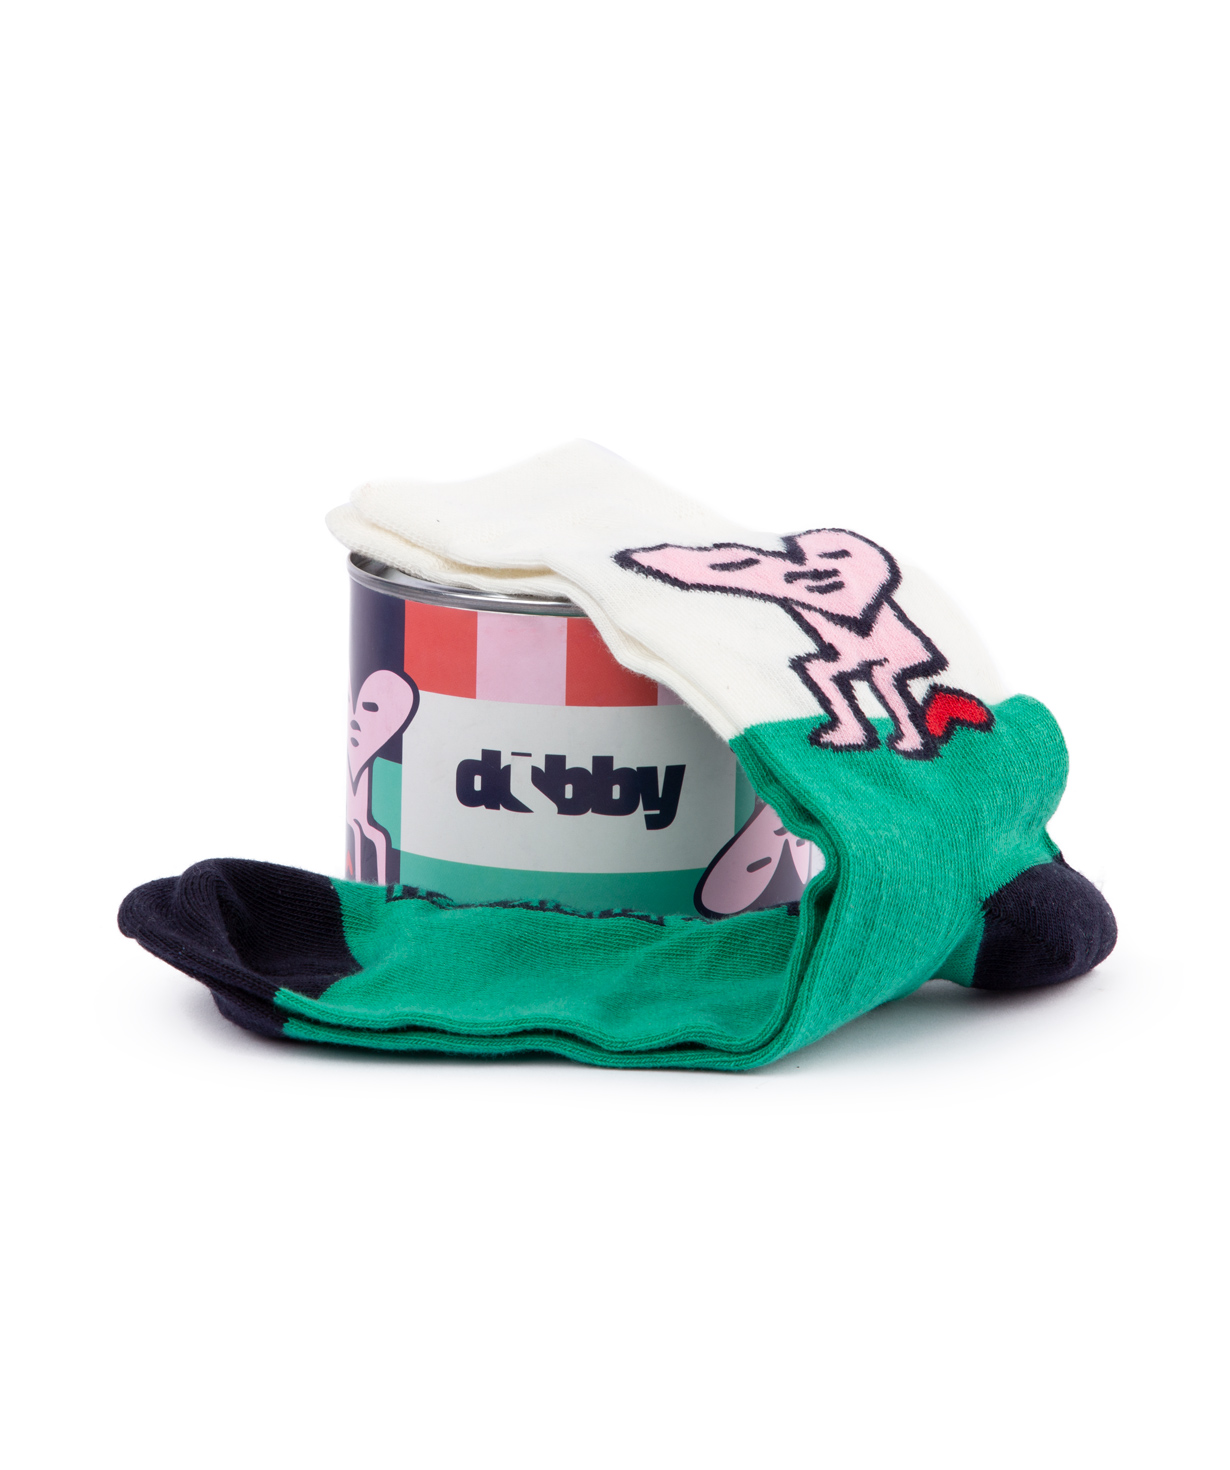 Գուլպա «Dobby socks» սրտիկ №1